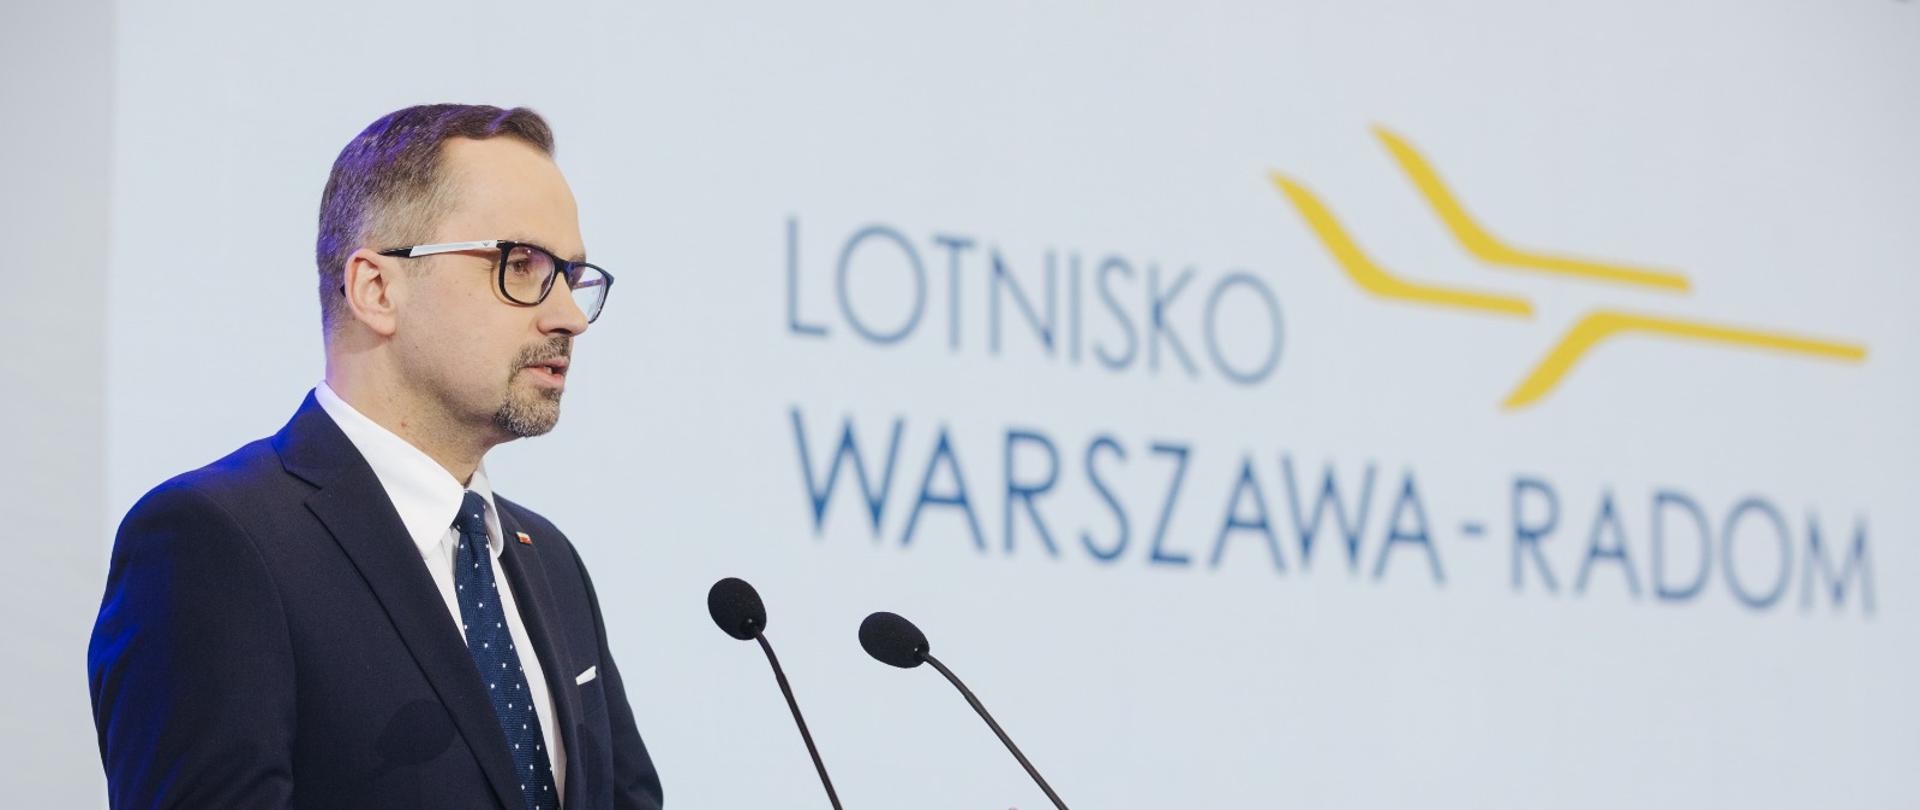 Wiceminister Marcin Horała stoi przed pulpitem i mówi do dwóch mikrofonów.